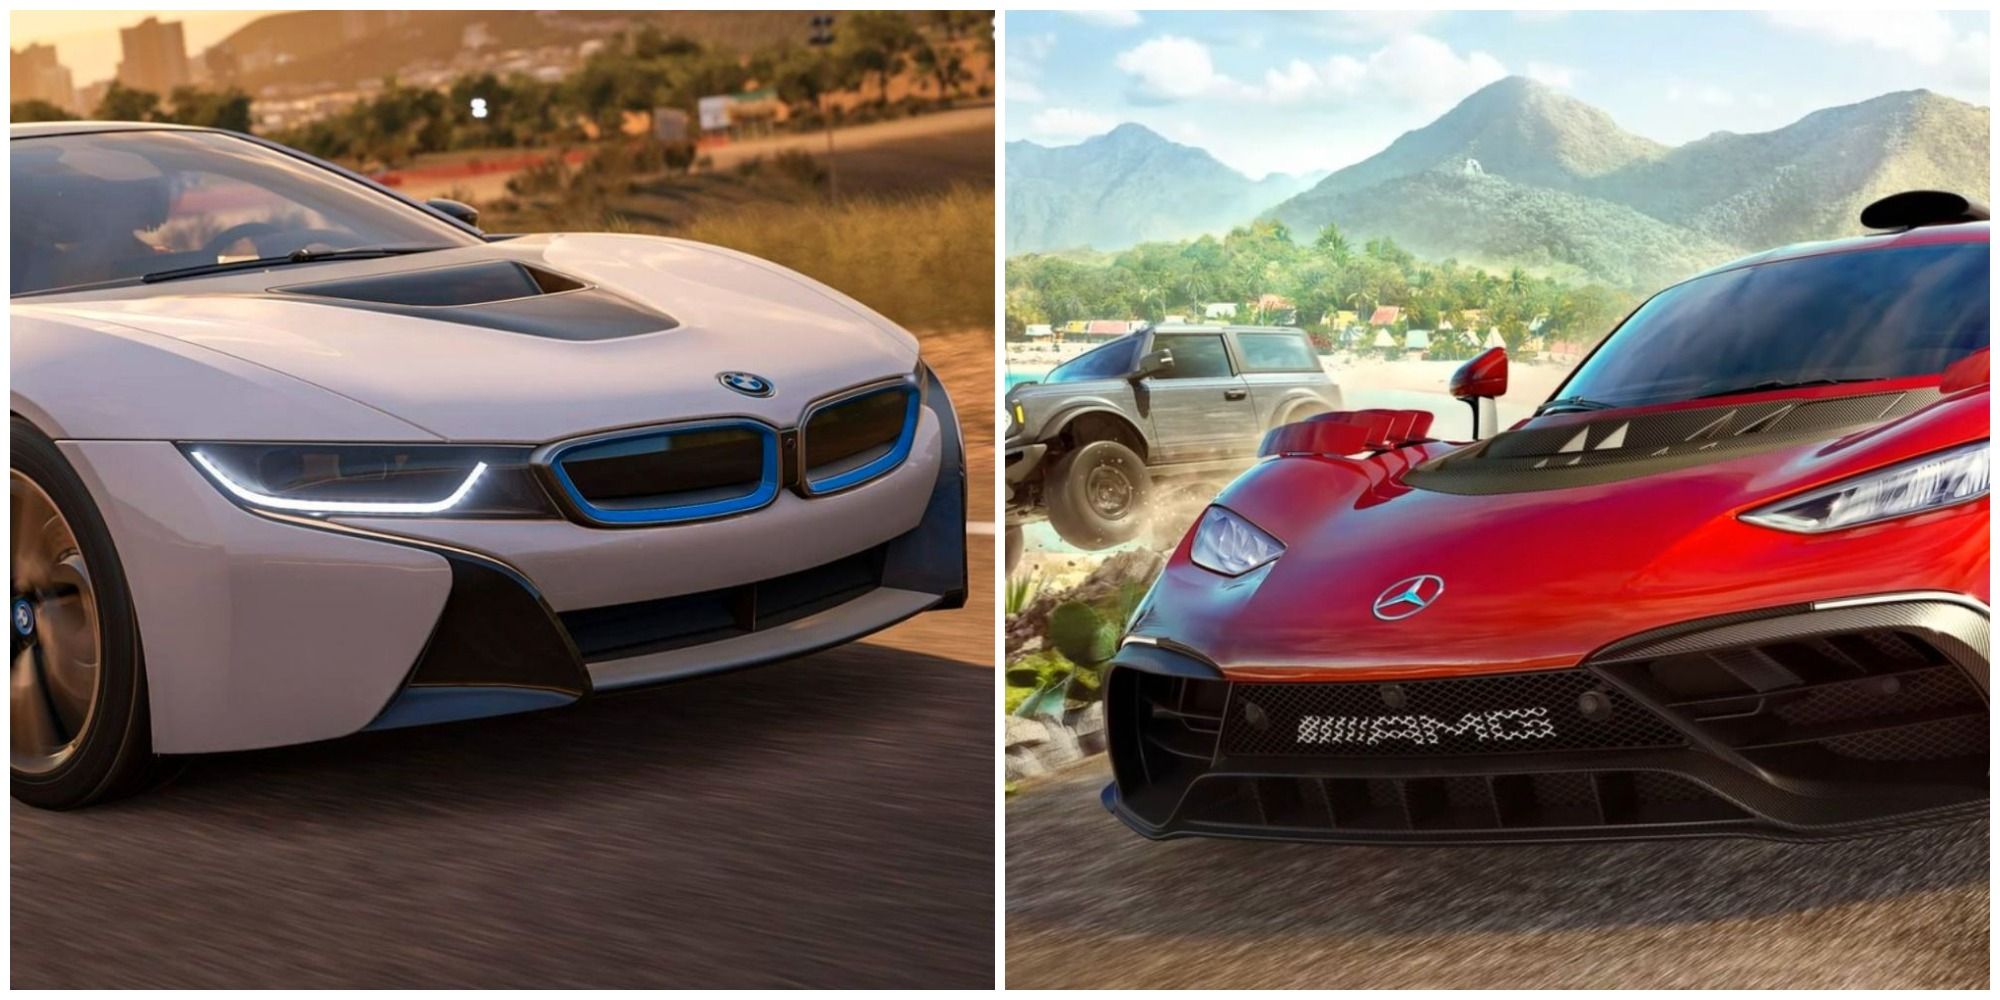 Ultimate Forza Horizon 5 Car List  Forza horizon, Forza horizon 5, Forza